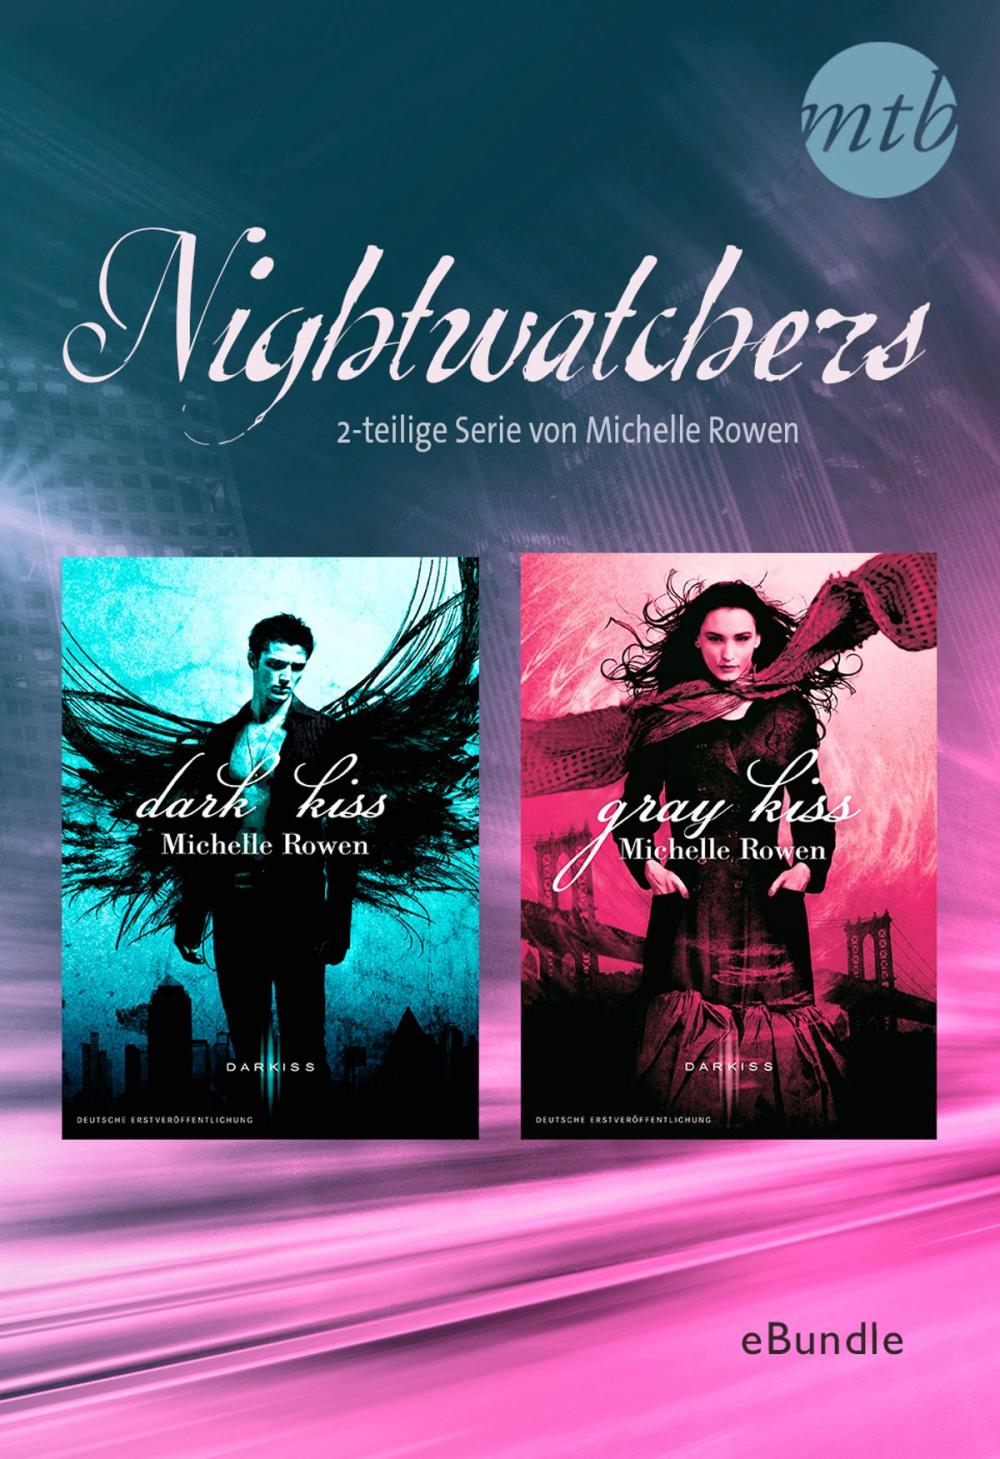 Big bigCover of Nightwatchers - 2-teilige Serie von Michelle Rowen